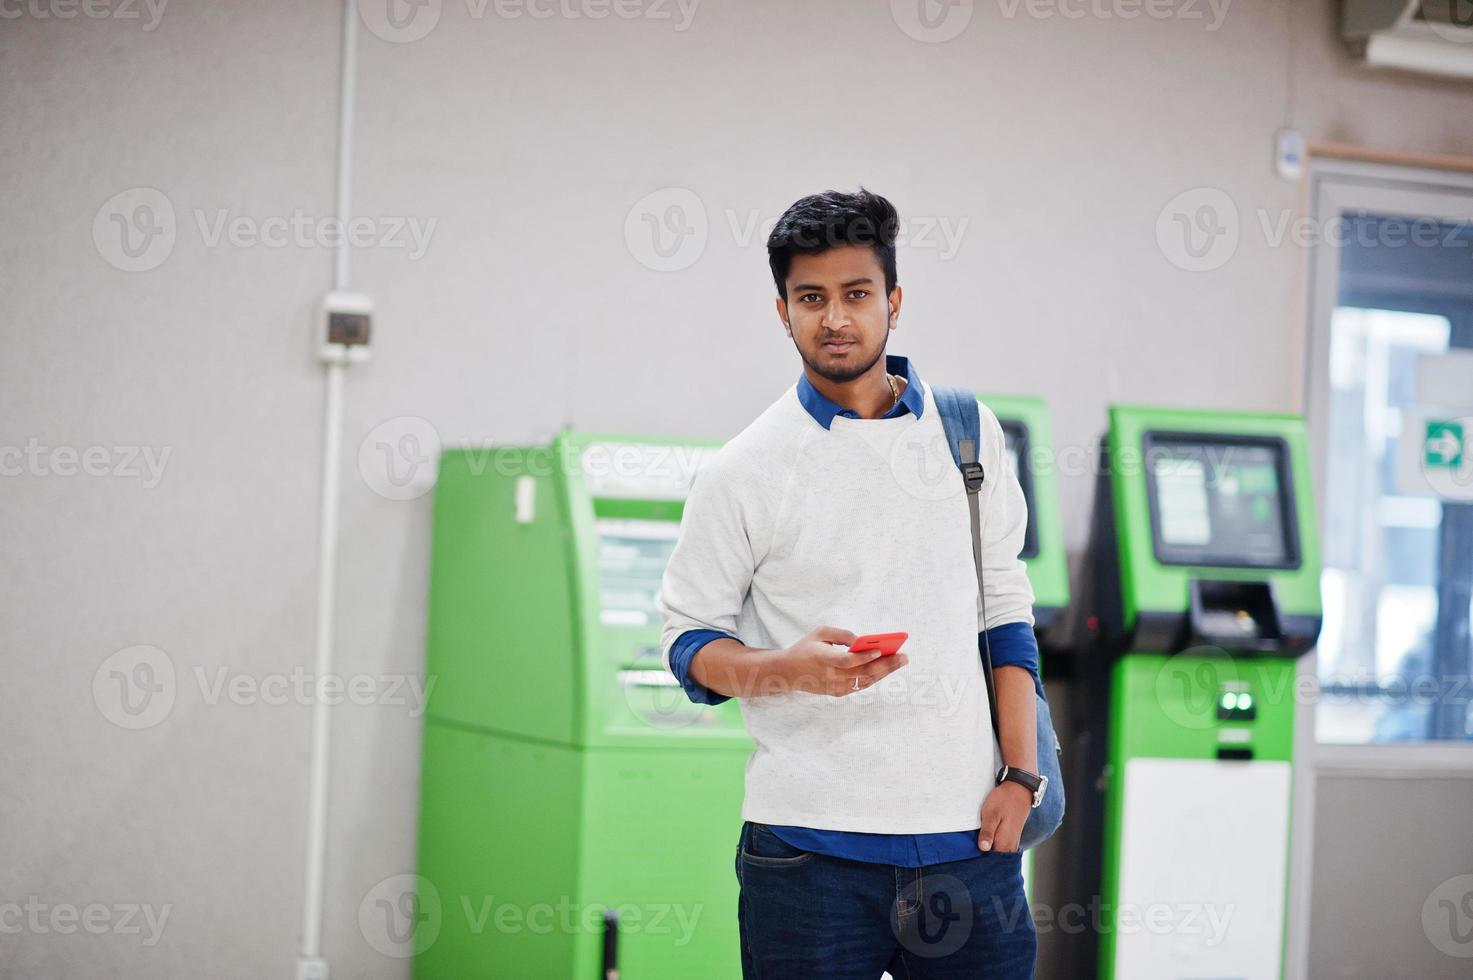 joven asiático con estilo con teléfono móvil y mochila contra la fila de cajero automático verde. foto